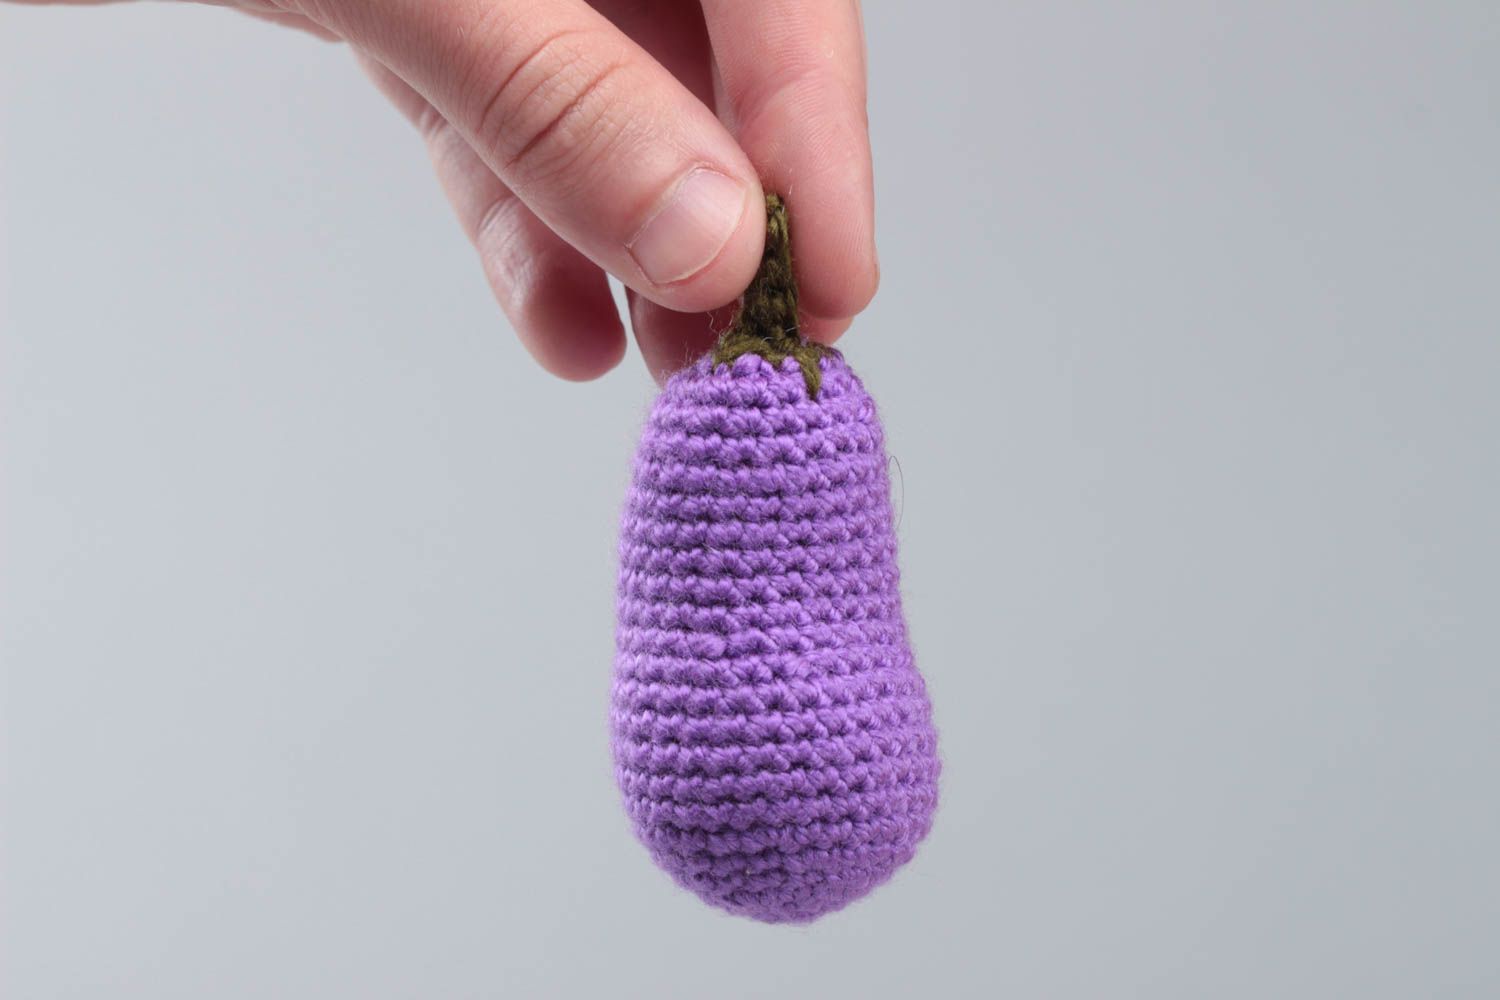 Вязаный баклажан крючком из акриловых ниток мягкая игрушка для ребенка или декора фото 5